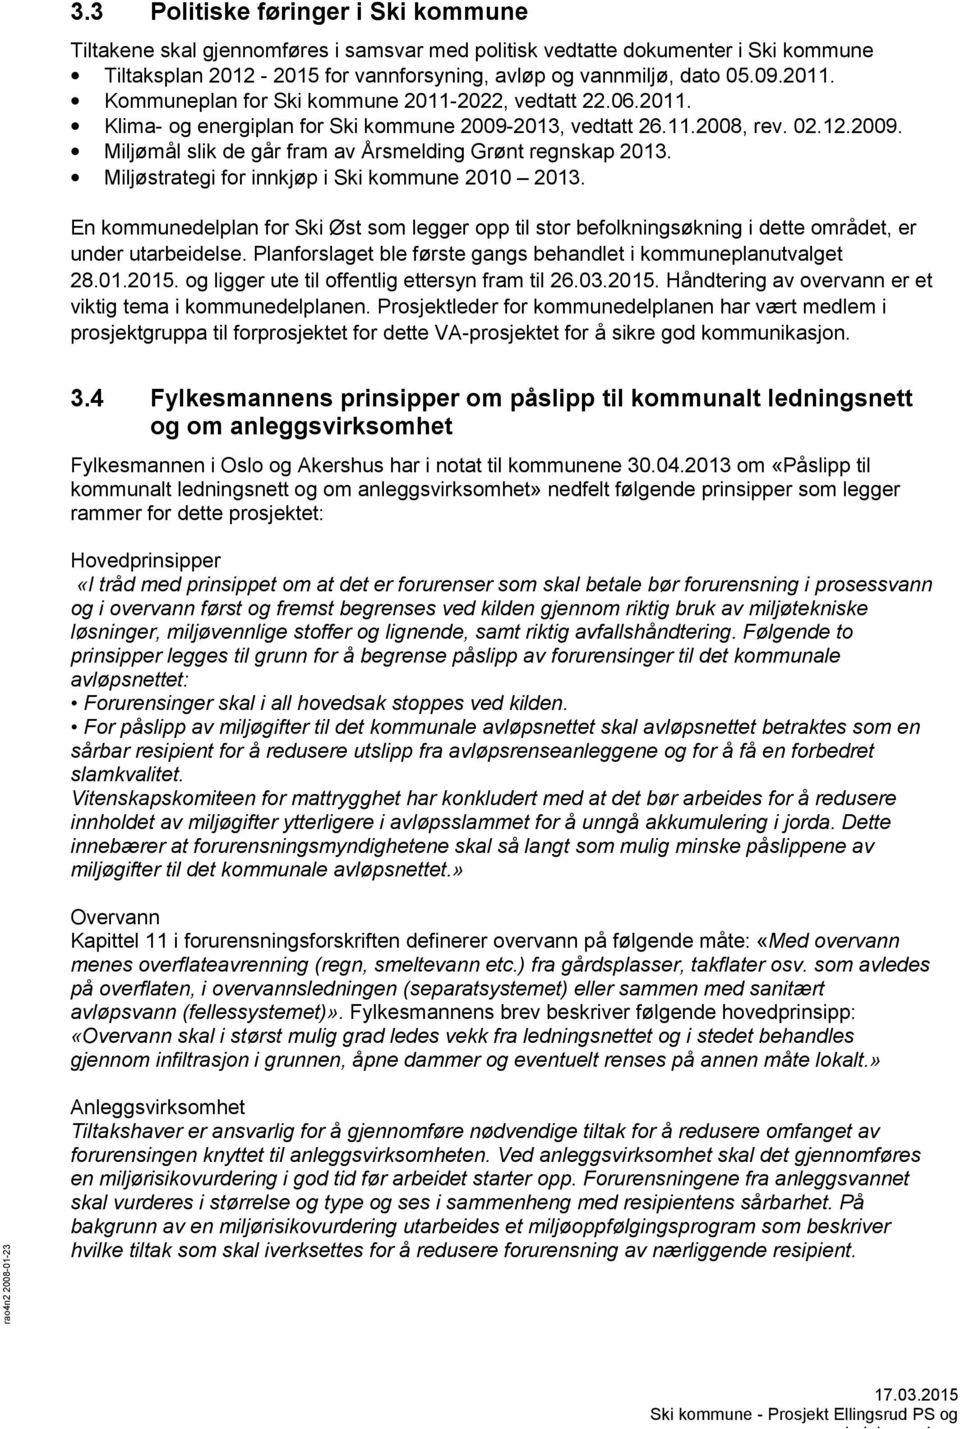 Miljøstrategi for innkjøp i Ski kommune 2010 2013. En kommunedelplan for Ski Øst som legger opp til stor befolkningsøkning i dette området, er under utarbeidelse.